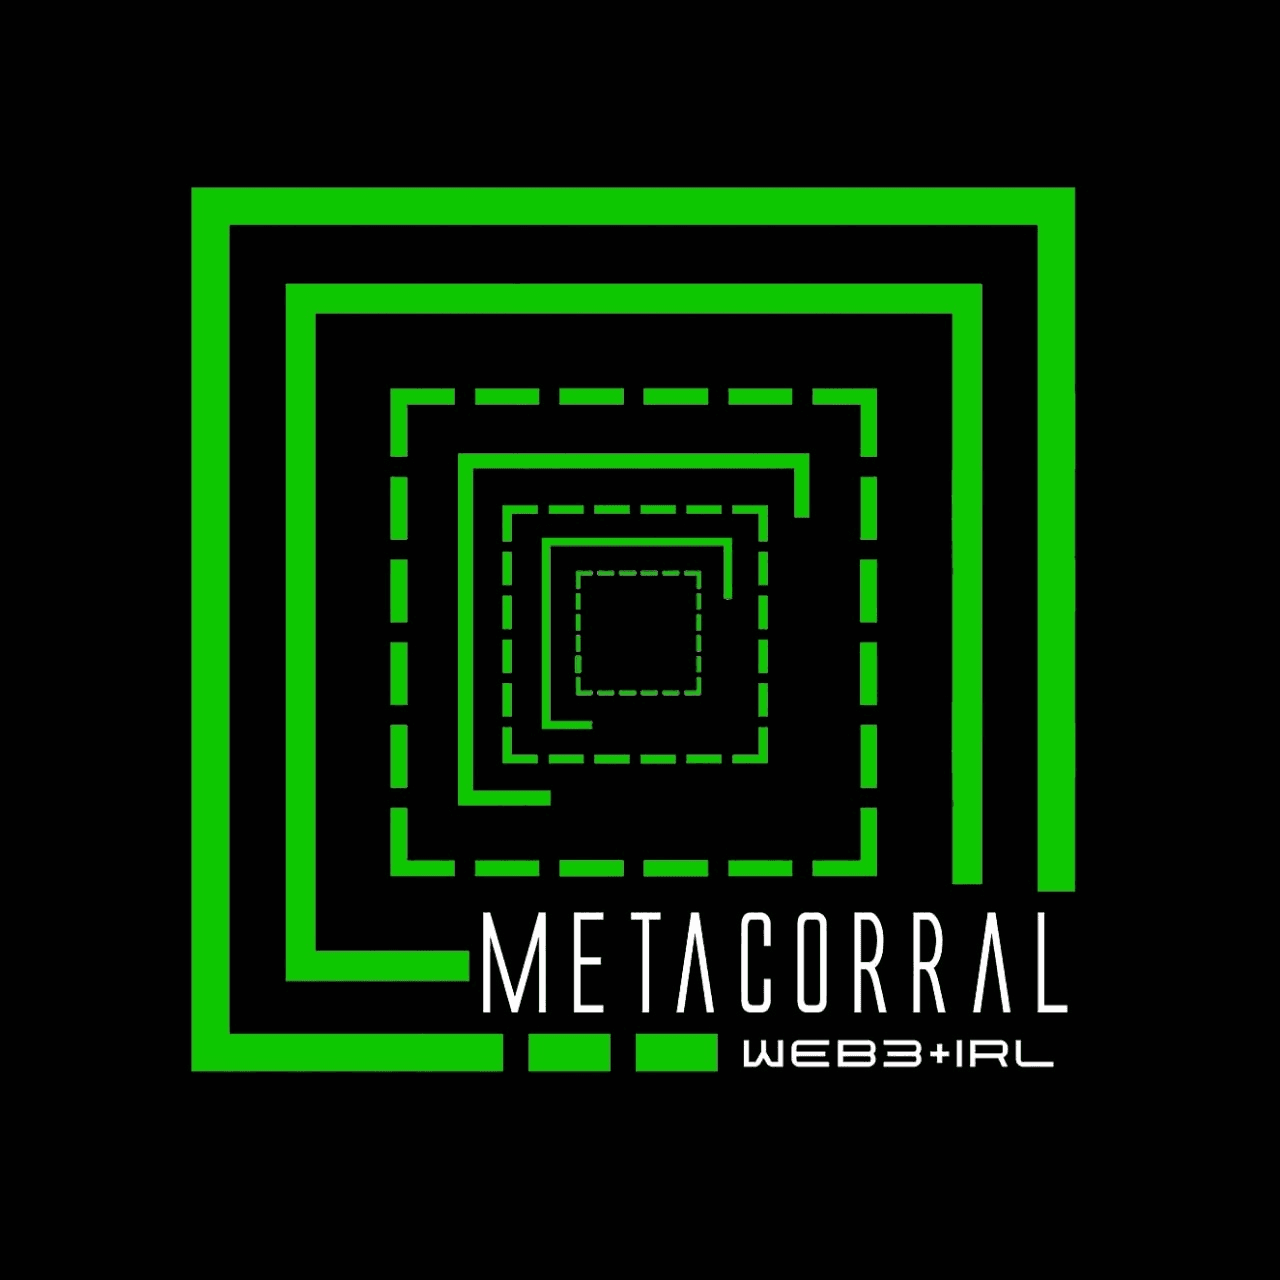 MetaCorral